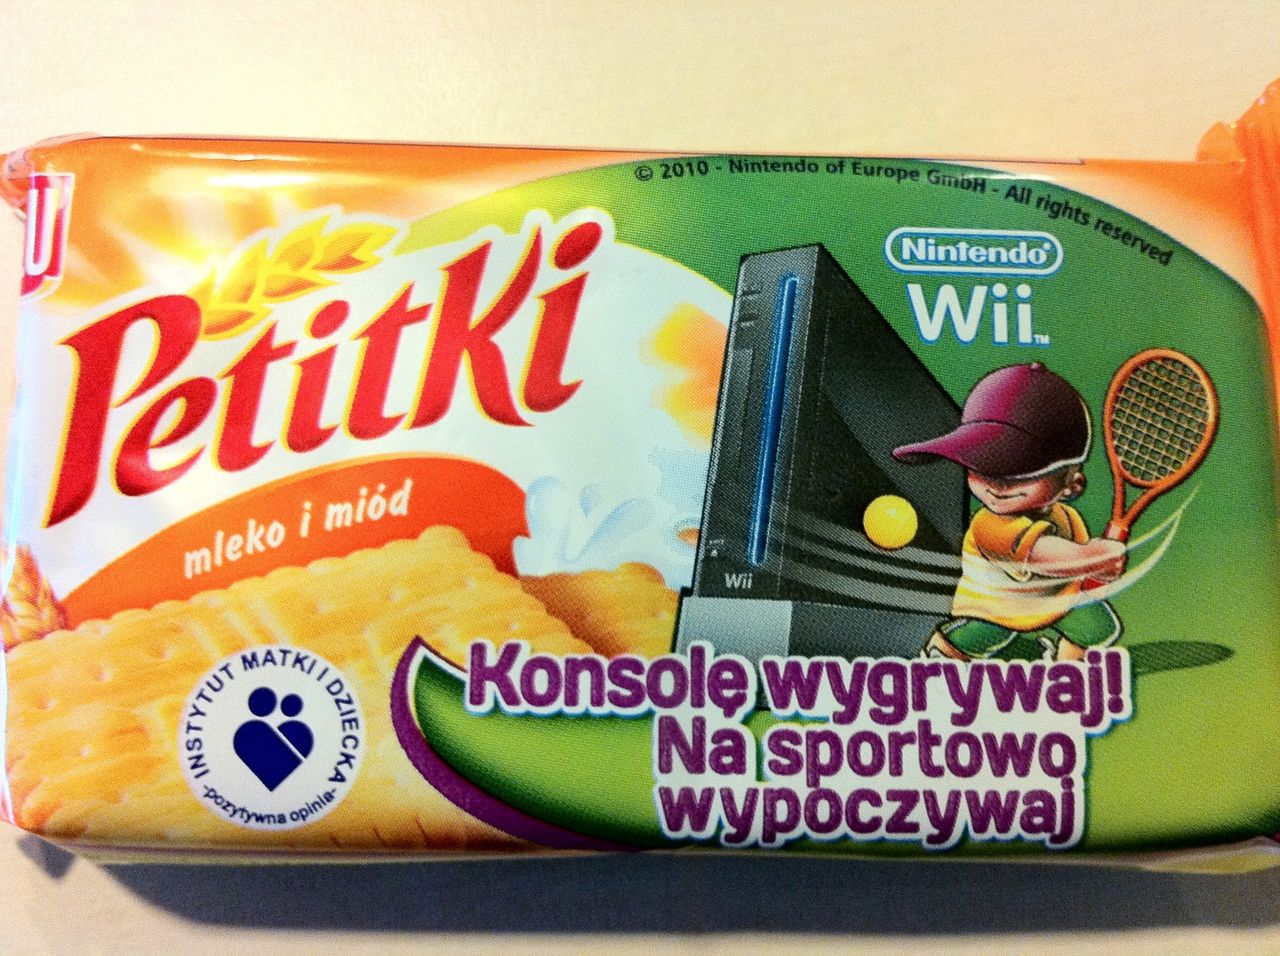 Polska to podobno najważniejszy kraj dla Nintendo